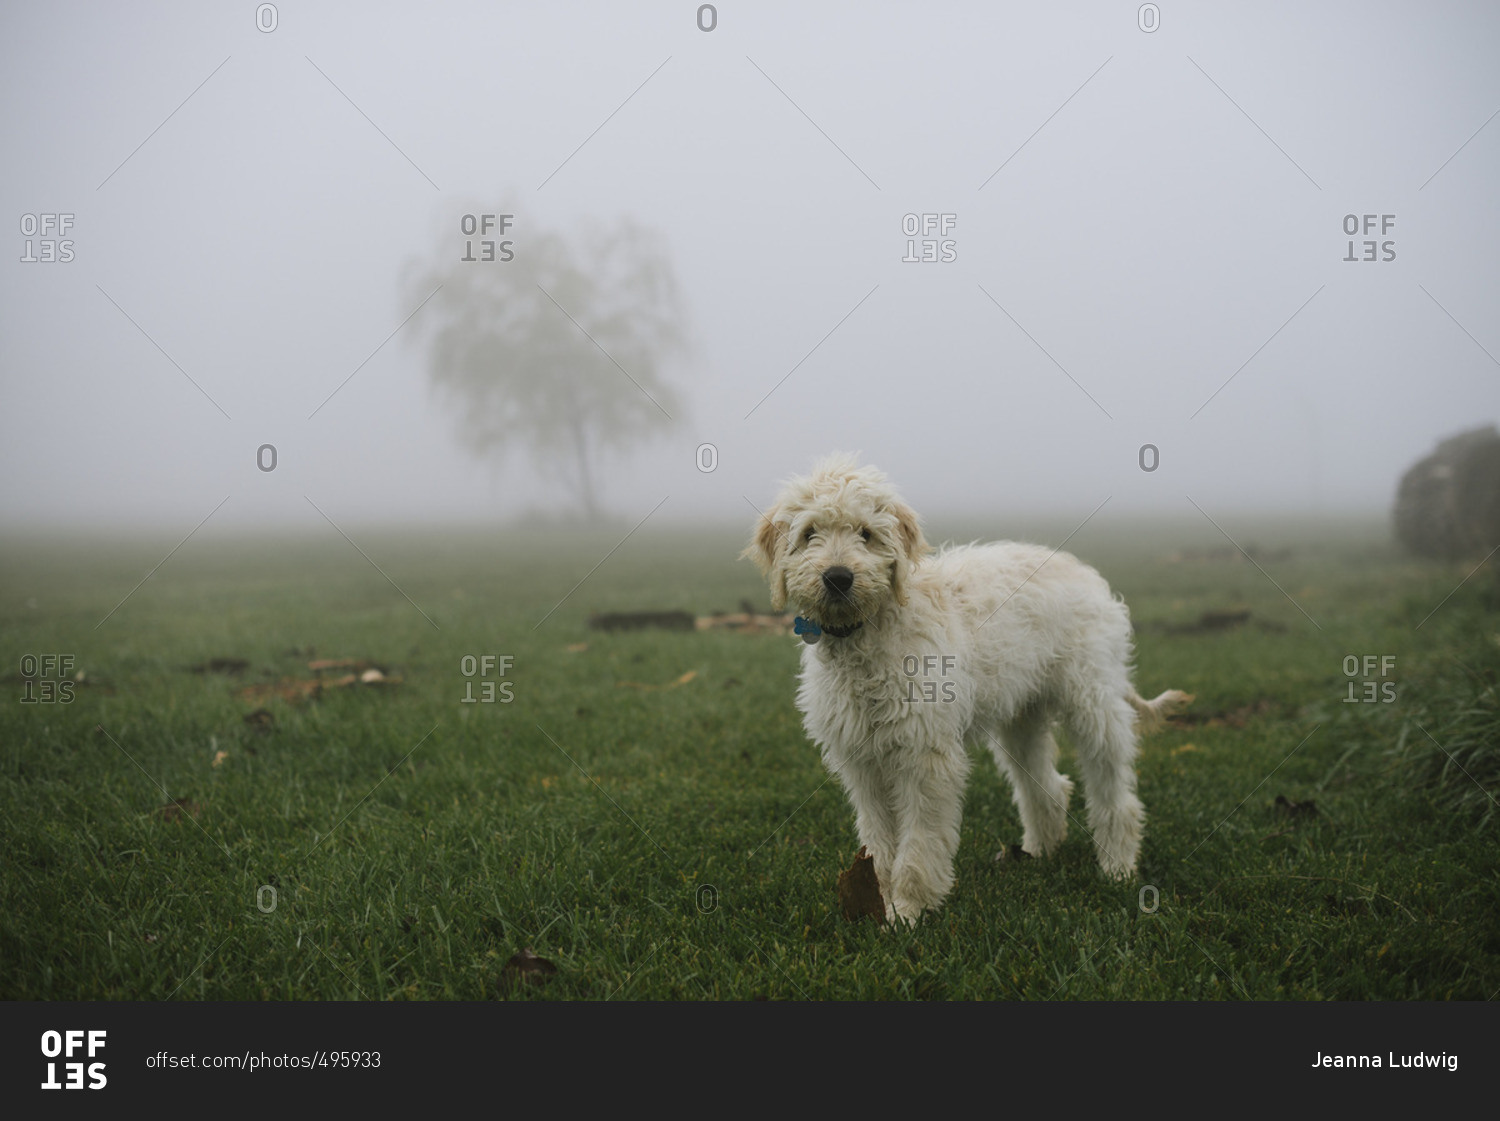 Fluffy dog walking in a foggy field